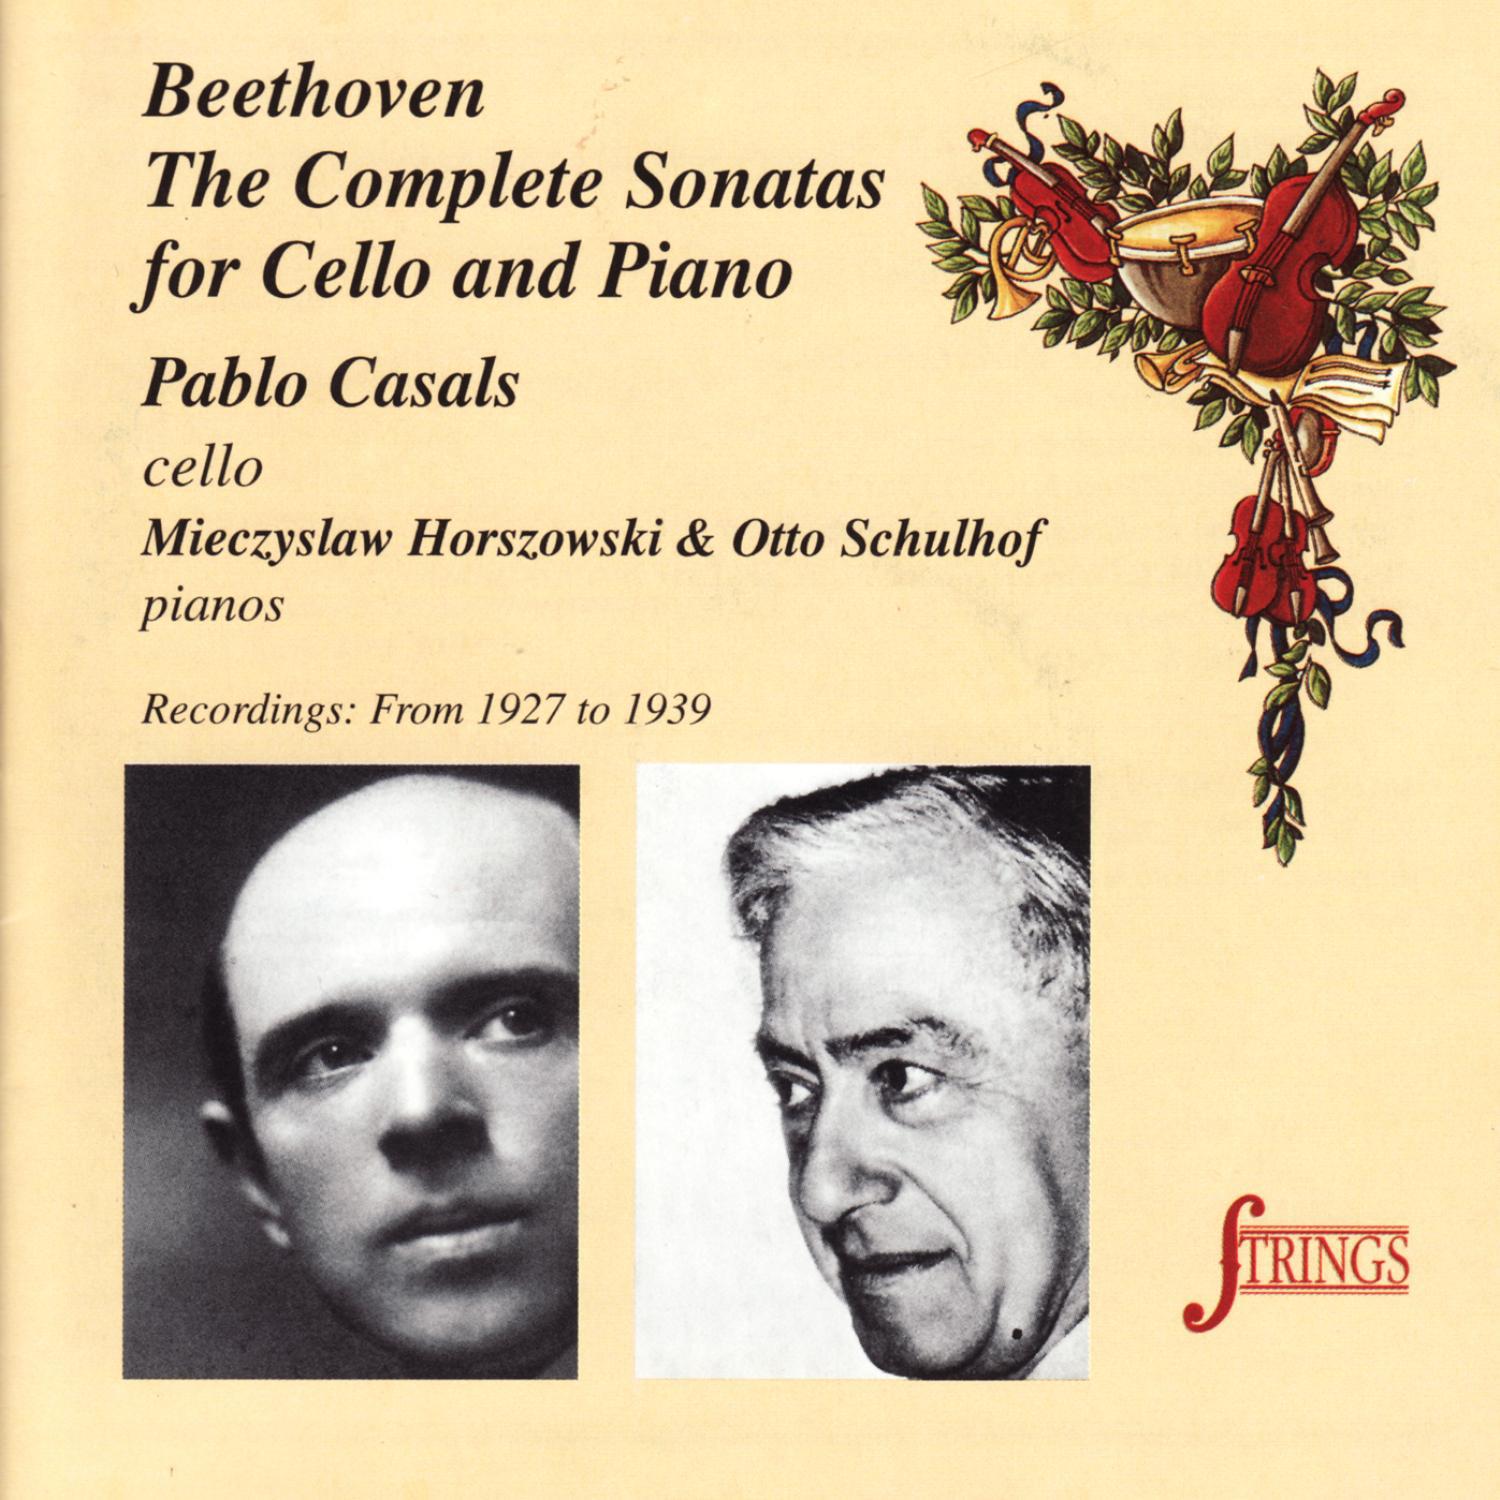 Sonata No. 1 for Cello and Piano in F Major, Op. 5 No. 1: I. Adagio sostenuto - Allegro